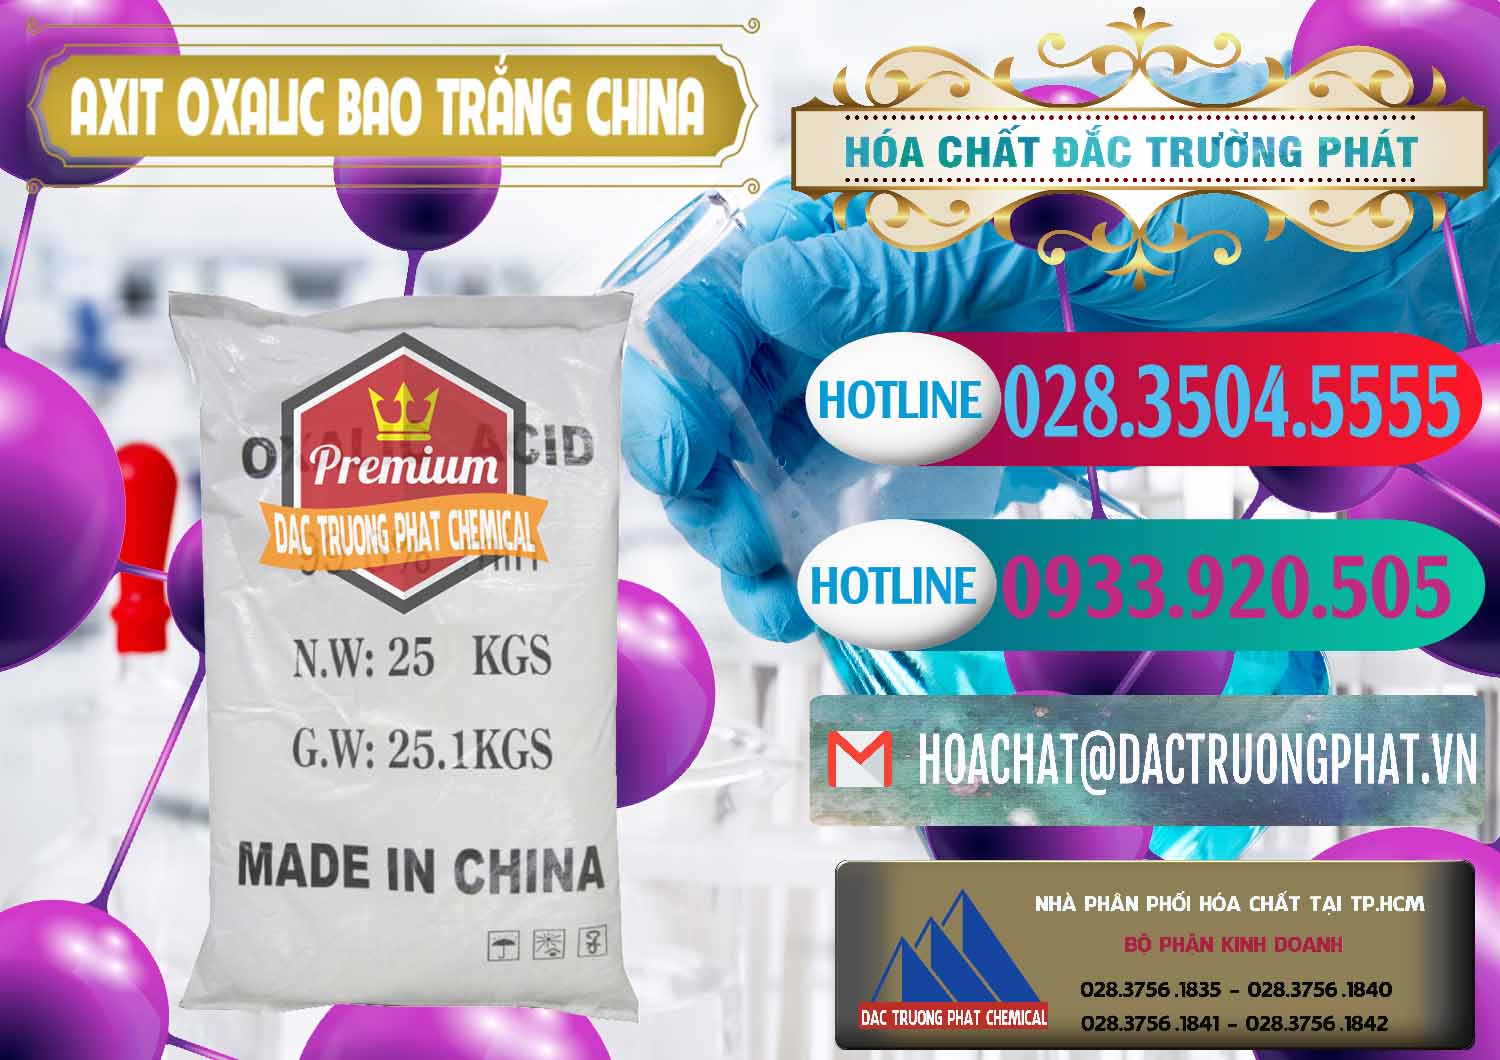 Cty bán ( cung ứng ) Acid Oxalic – Axit Oxalic 99.6% Bao Trắng Trung Quốc China - 0270 - Nơi cung ứng và phân phối hóa chất tại TP.HCM - truongphat.vn